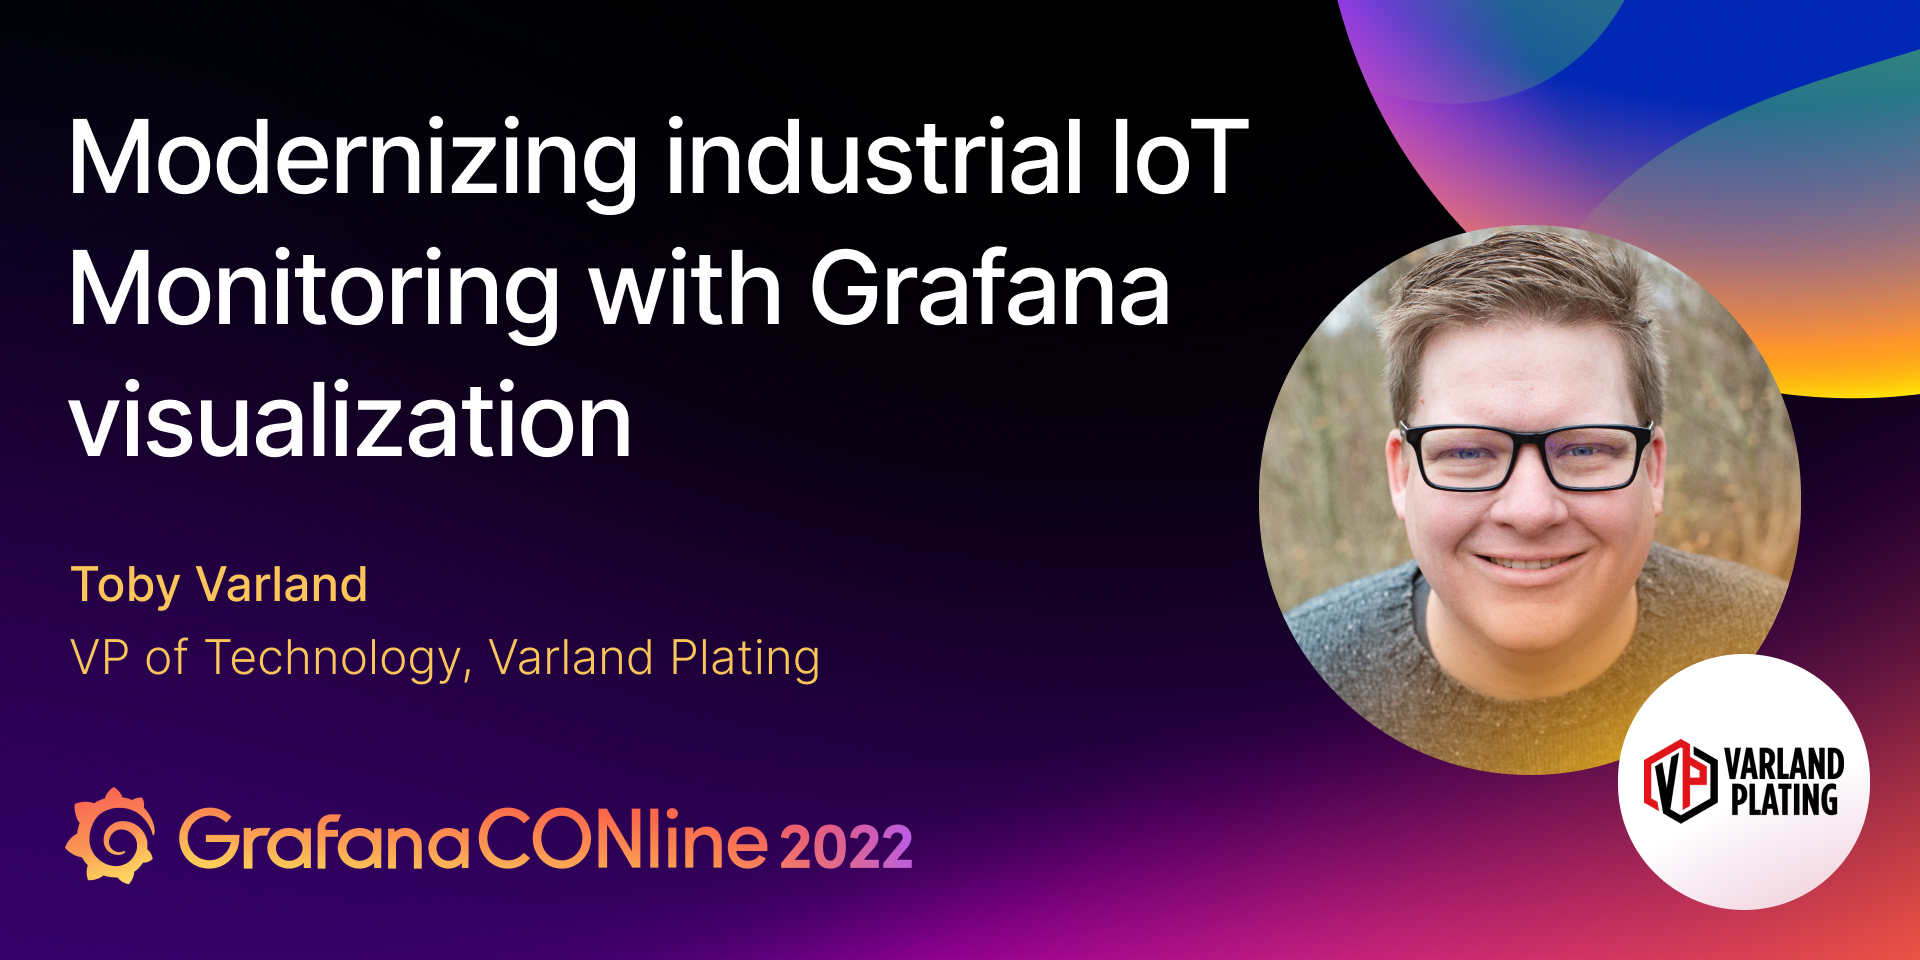 Industrial IoT at GrafanaCONline 2022